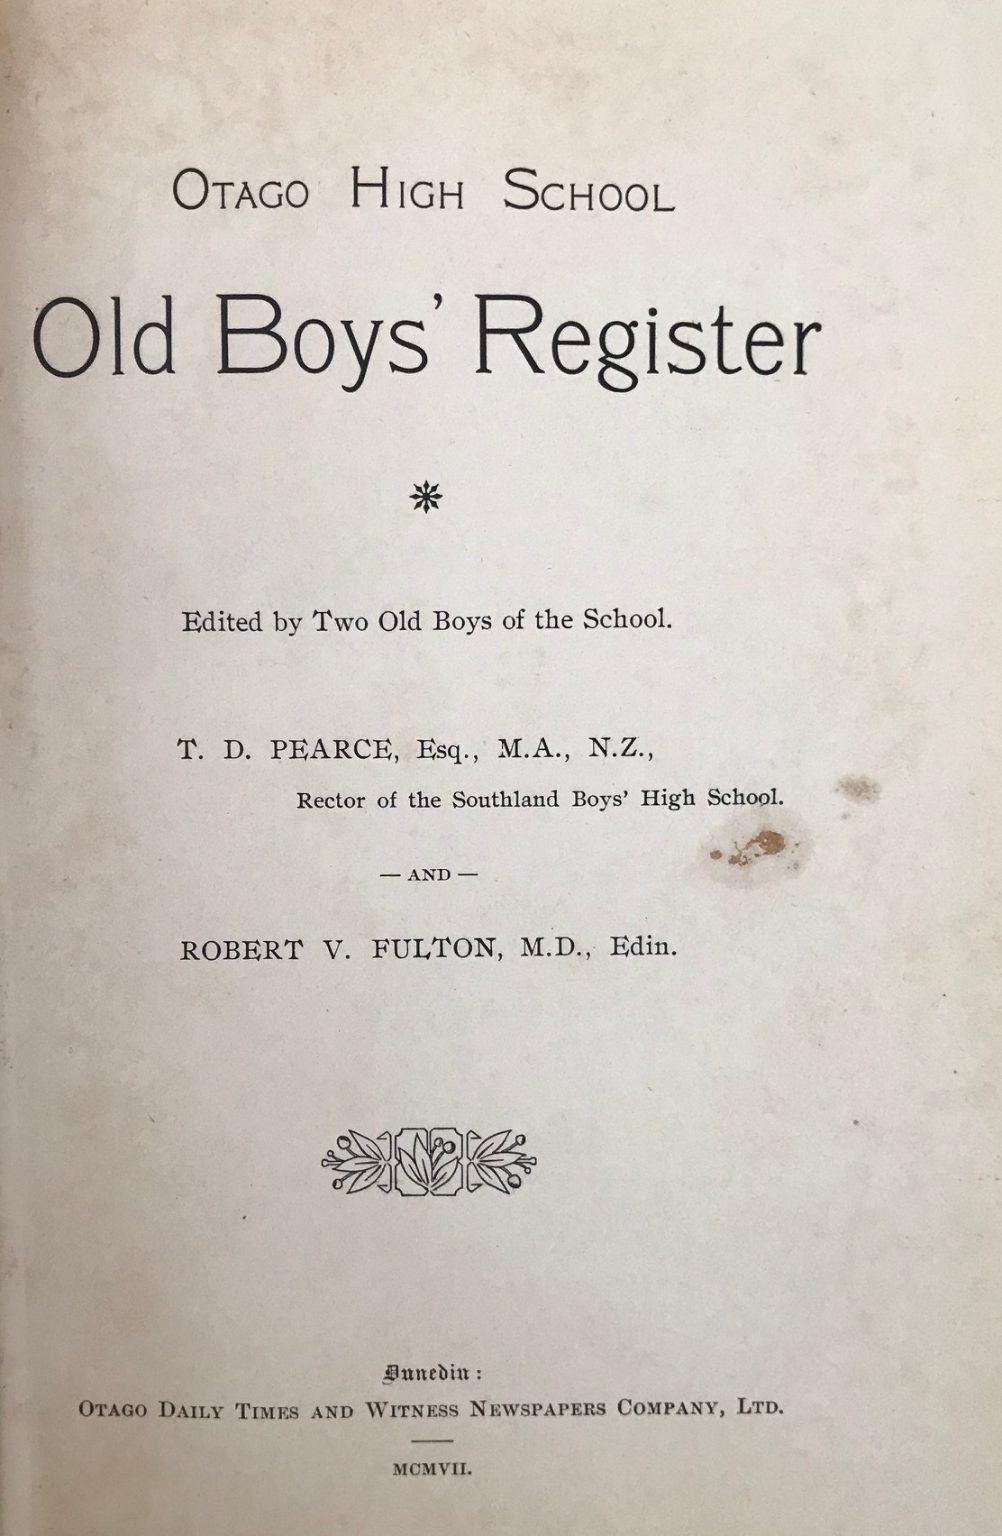 OTAGO HIGH SCHOOL OLD BOYS' REGISTER 1907